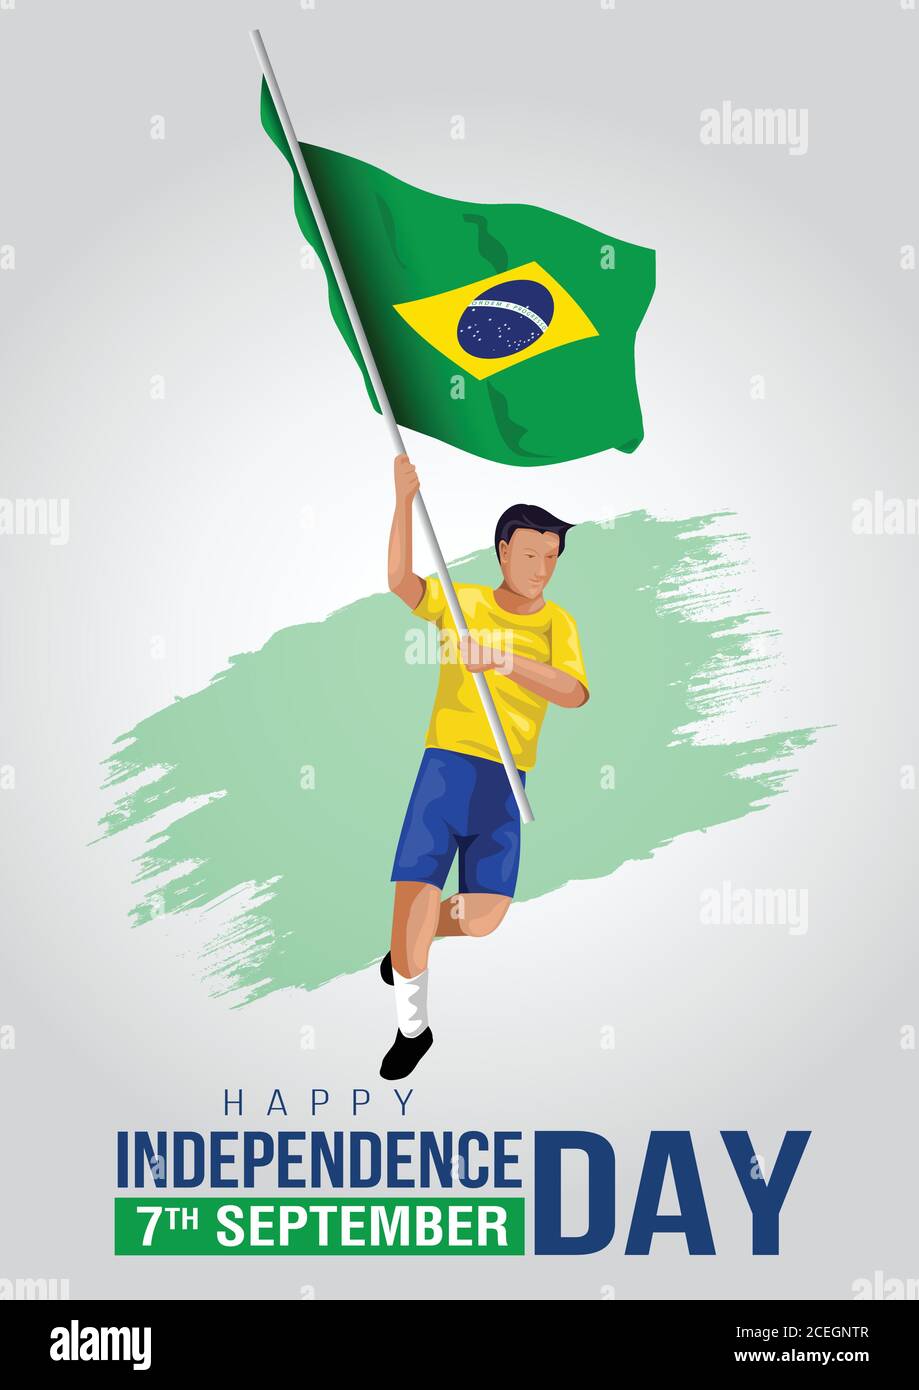 7 septembre Brésil jour de l'indépendance bannière Illustration vectorielle. Homme courir avec le drapeau brésilien Illustration de Vecteur